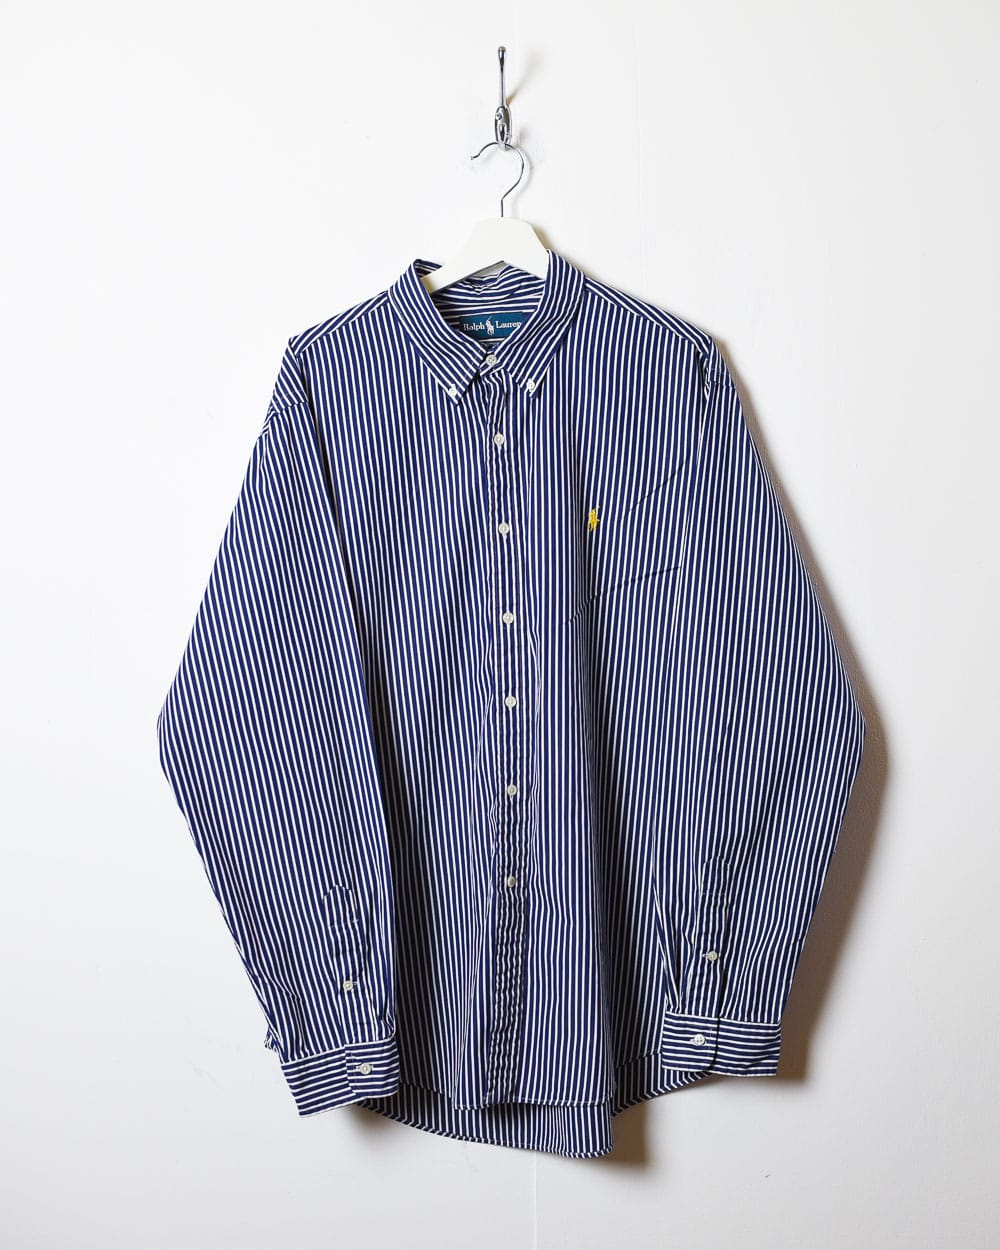 Navy Polo Ralph Lauren Striped Shirt - XX-Large